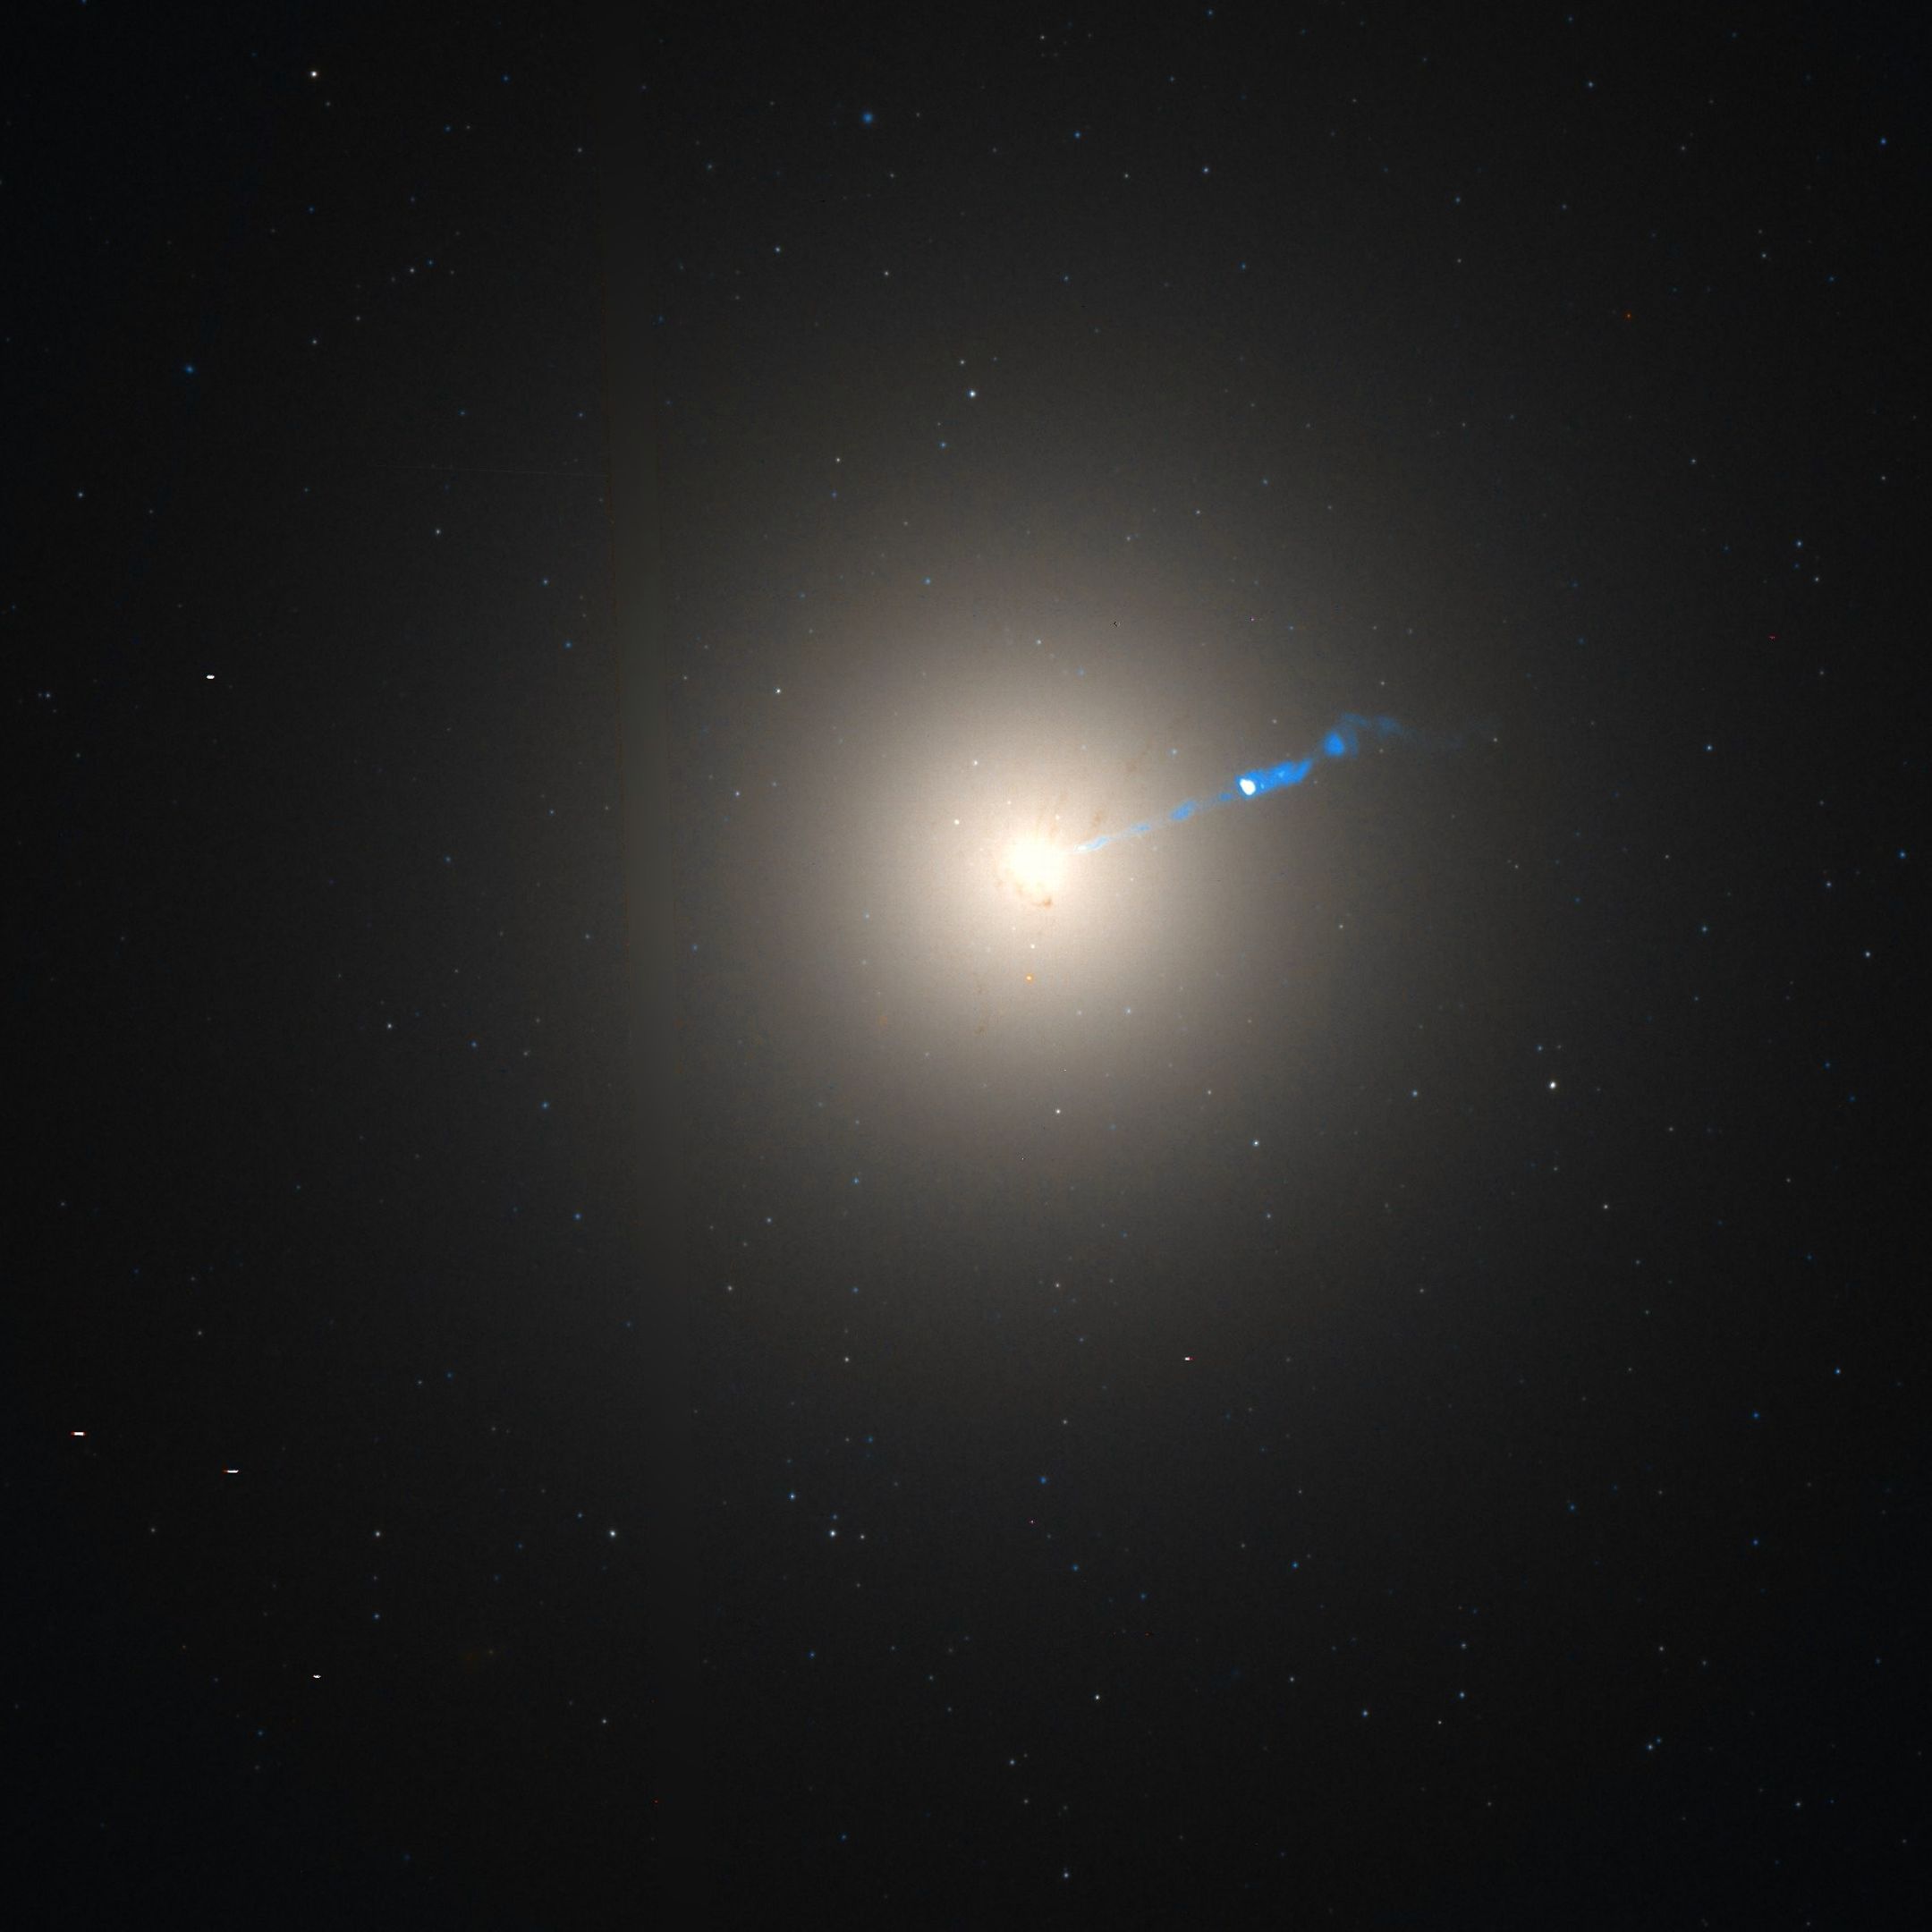 Der galaktische Kern von M87, aufgenommen mit dem
     Hubble Teleskop, mit dem auffälligen Jet der von dem Schwarzen
     Loch erzeugt wird.
     (<a
     href='https://commons.wikimedia.org/w/index.php?curid=7598267'>NASA,
     WikiSky</a>)